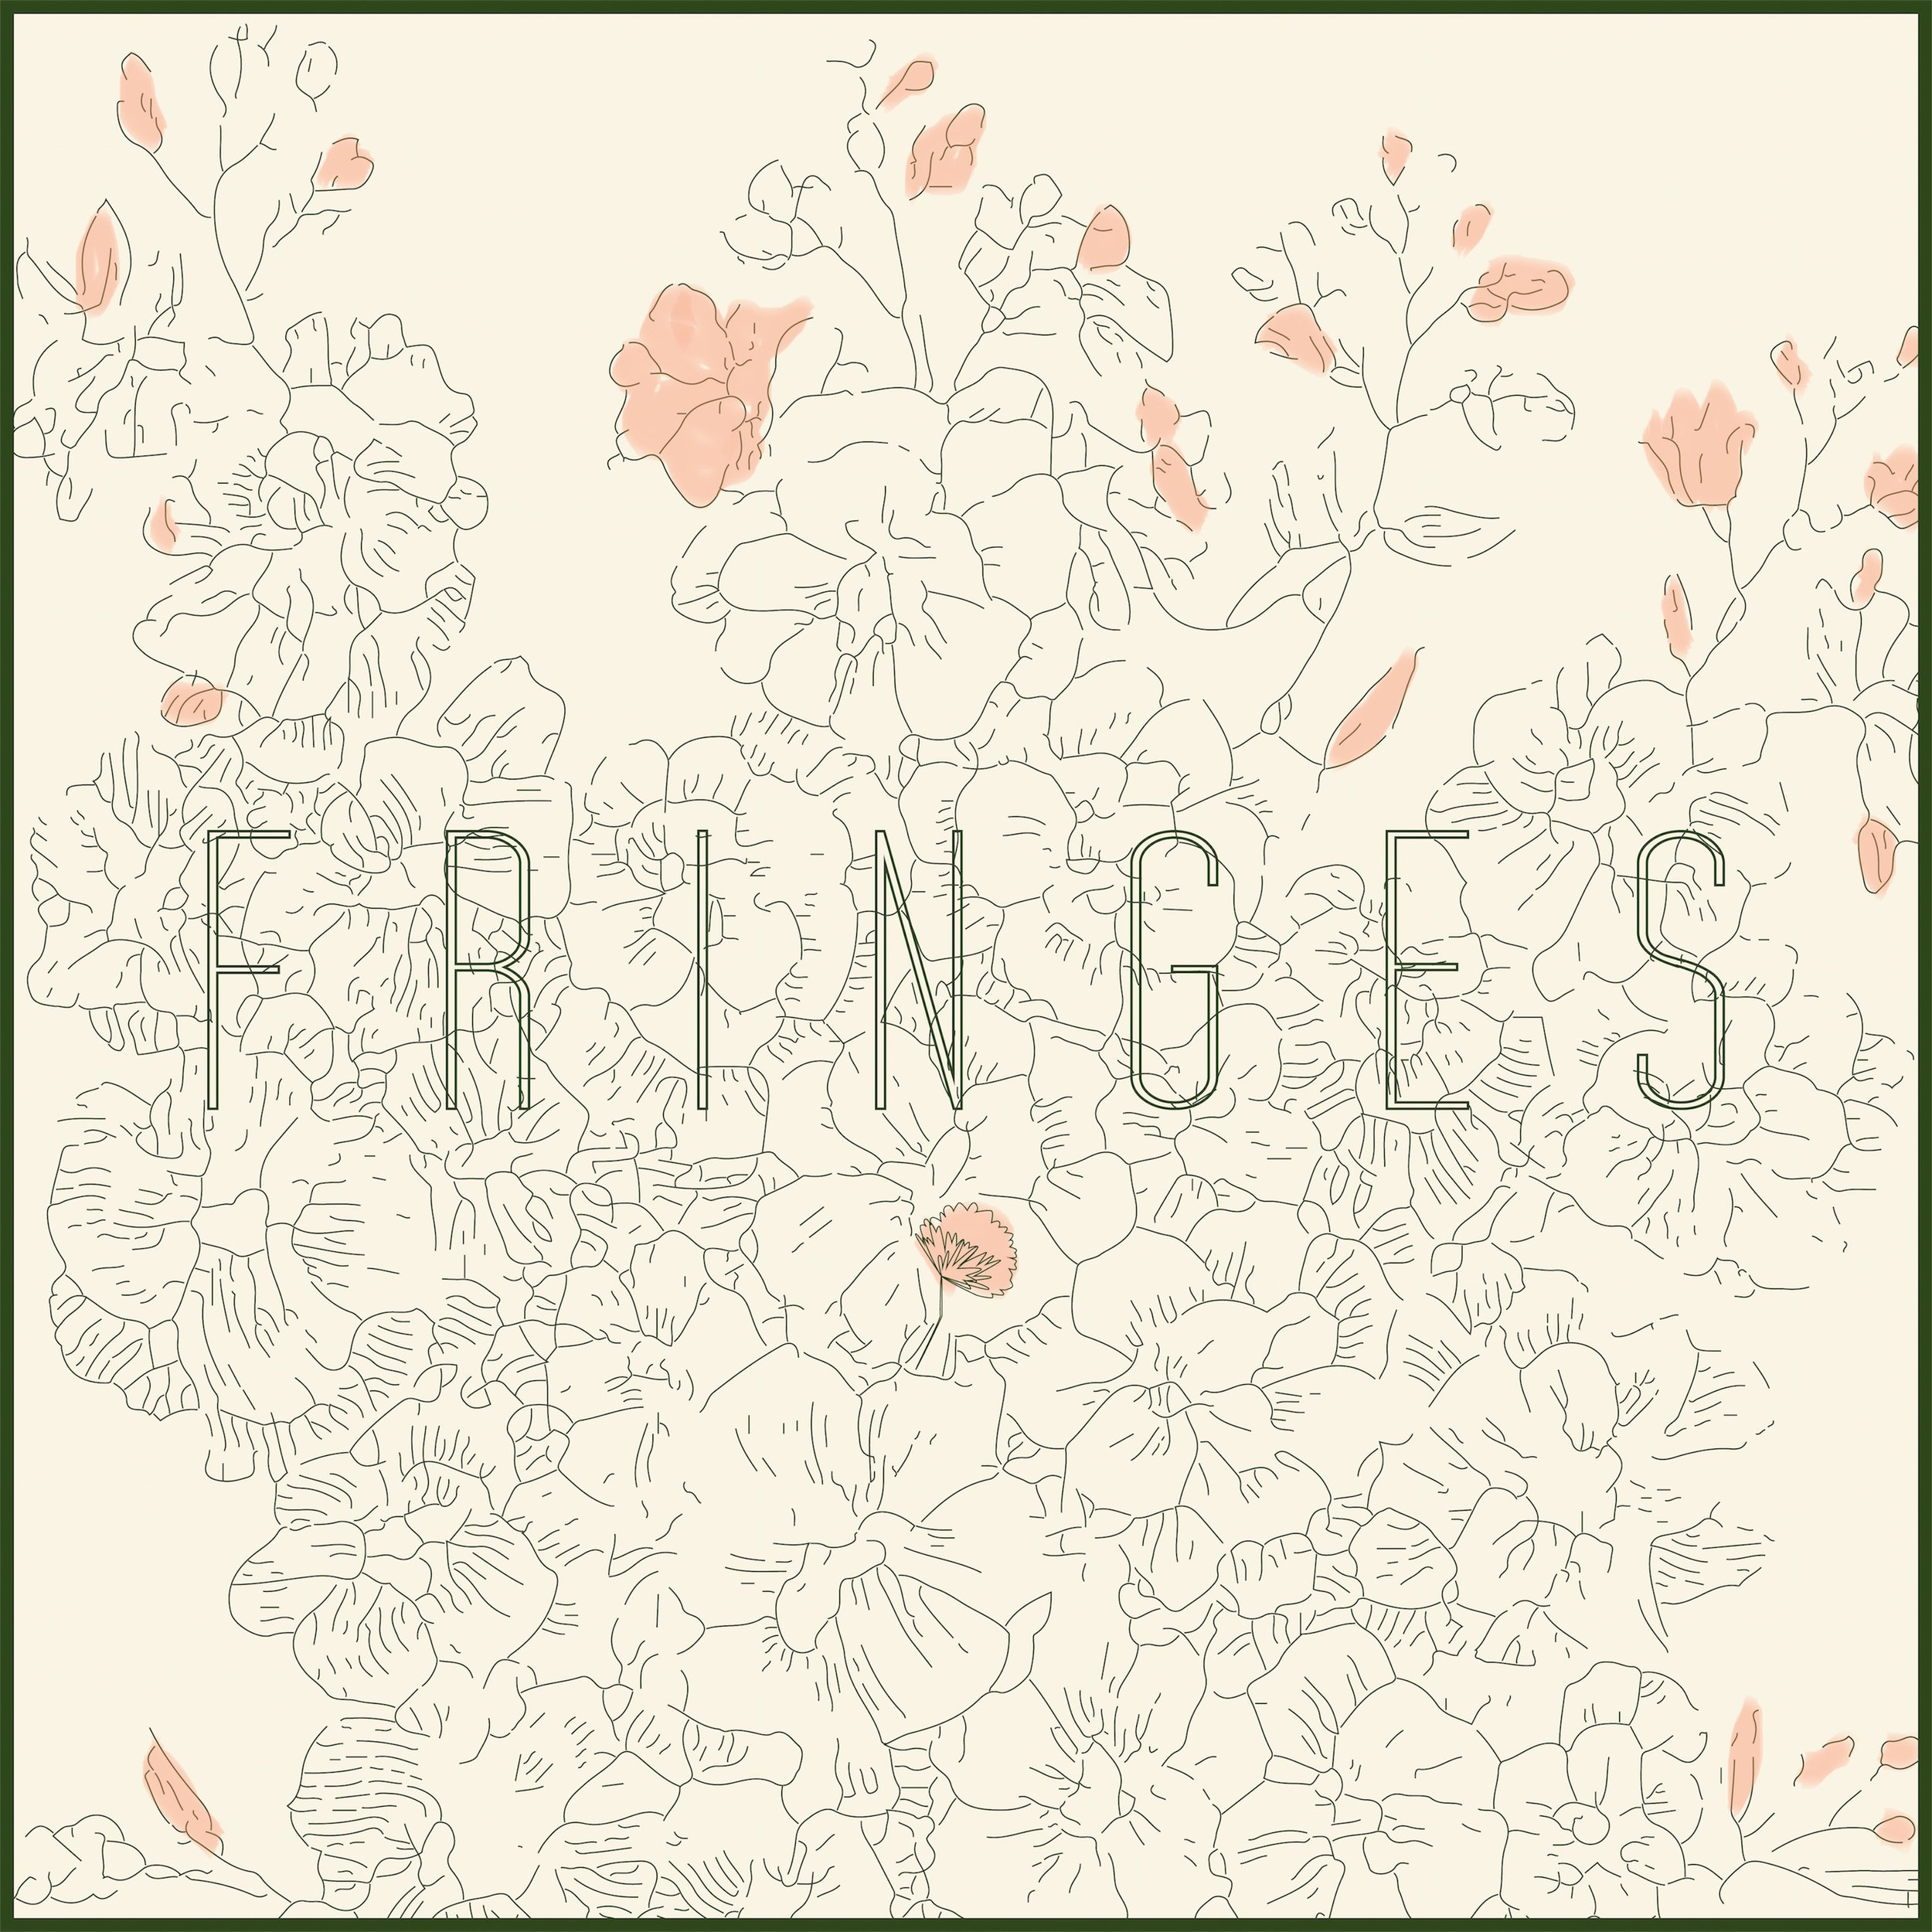 Fringes - Self Titled EP